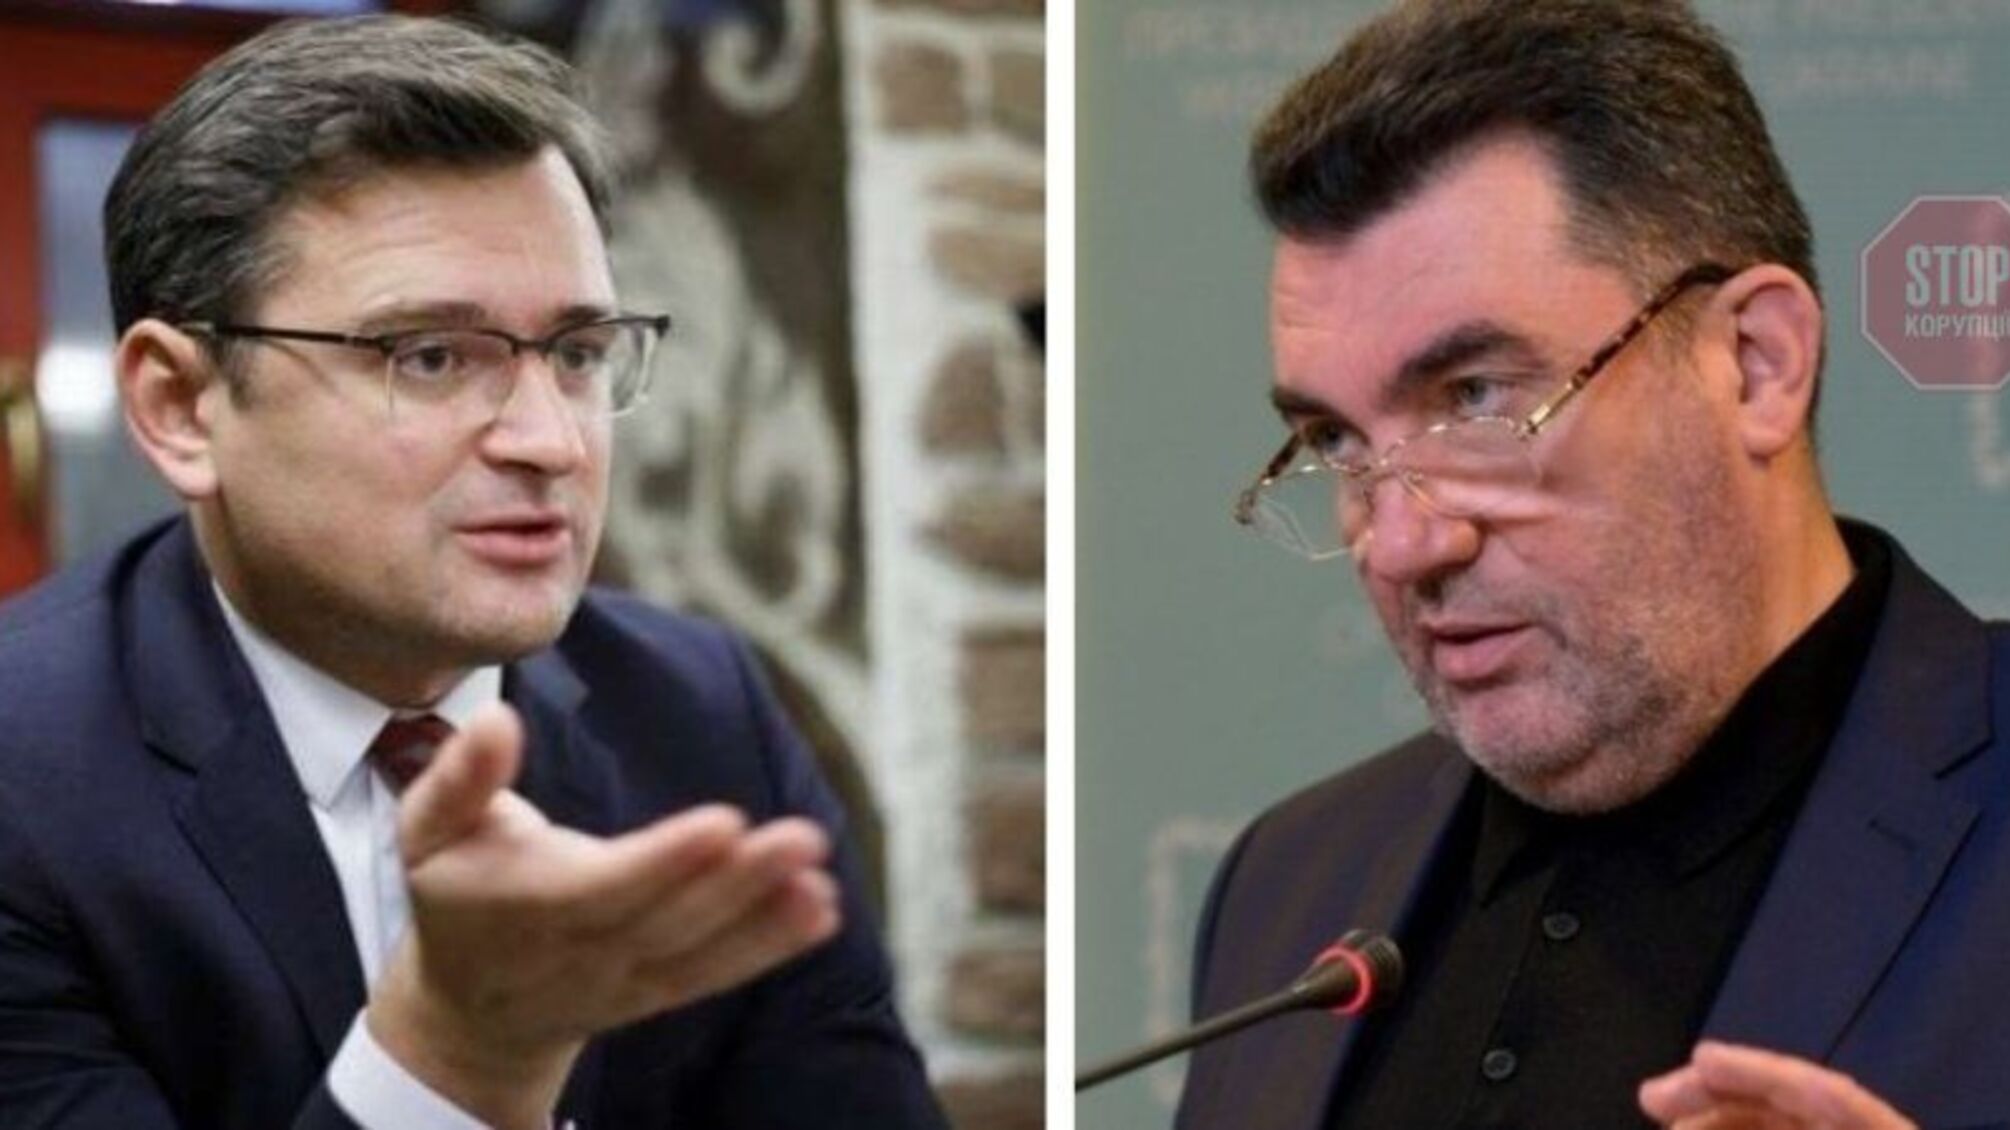 Данилов и Кулеба отреагировали на российские санкции